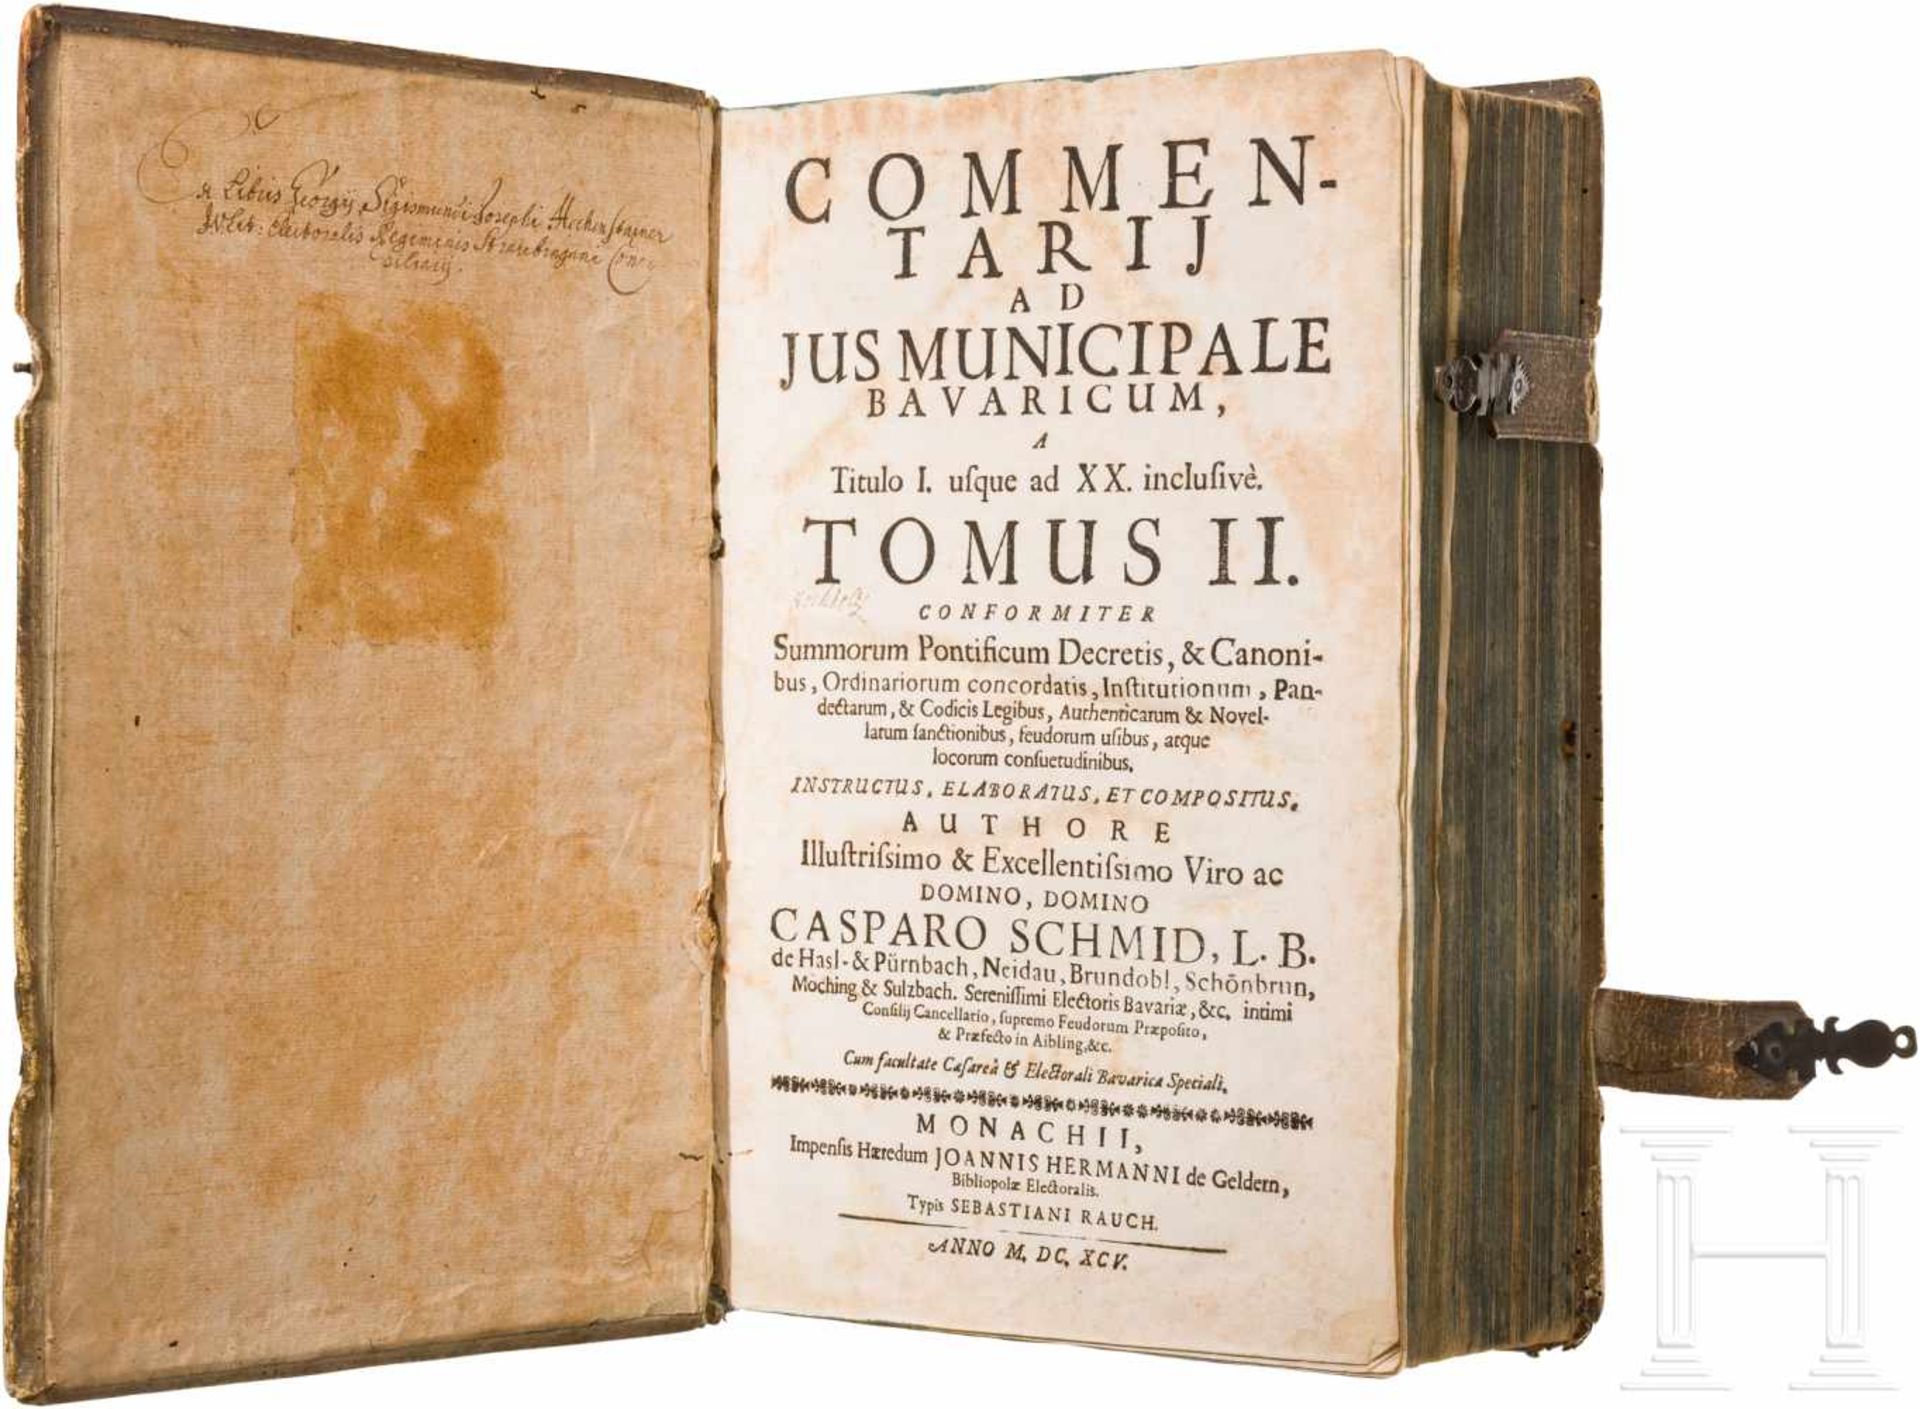 Johannis Hermann, "Commentarii ad Jus Municipale Bavaricum", München, 16451183 S. plus Index.